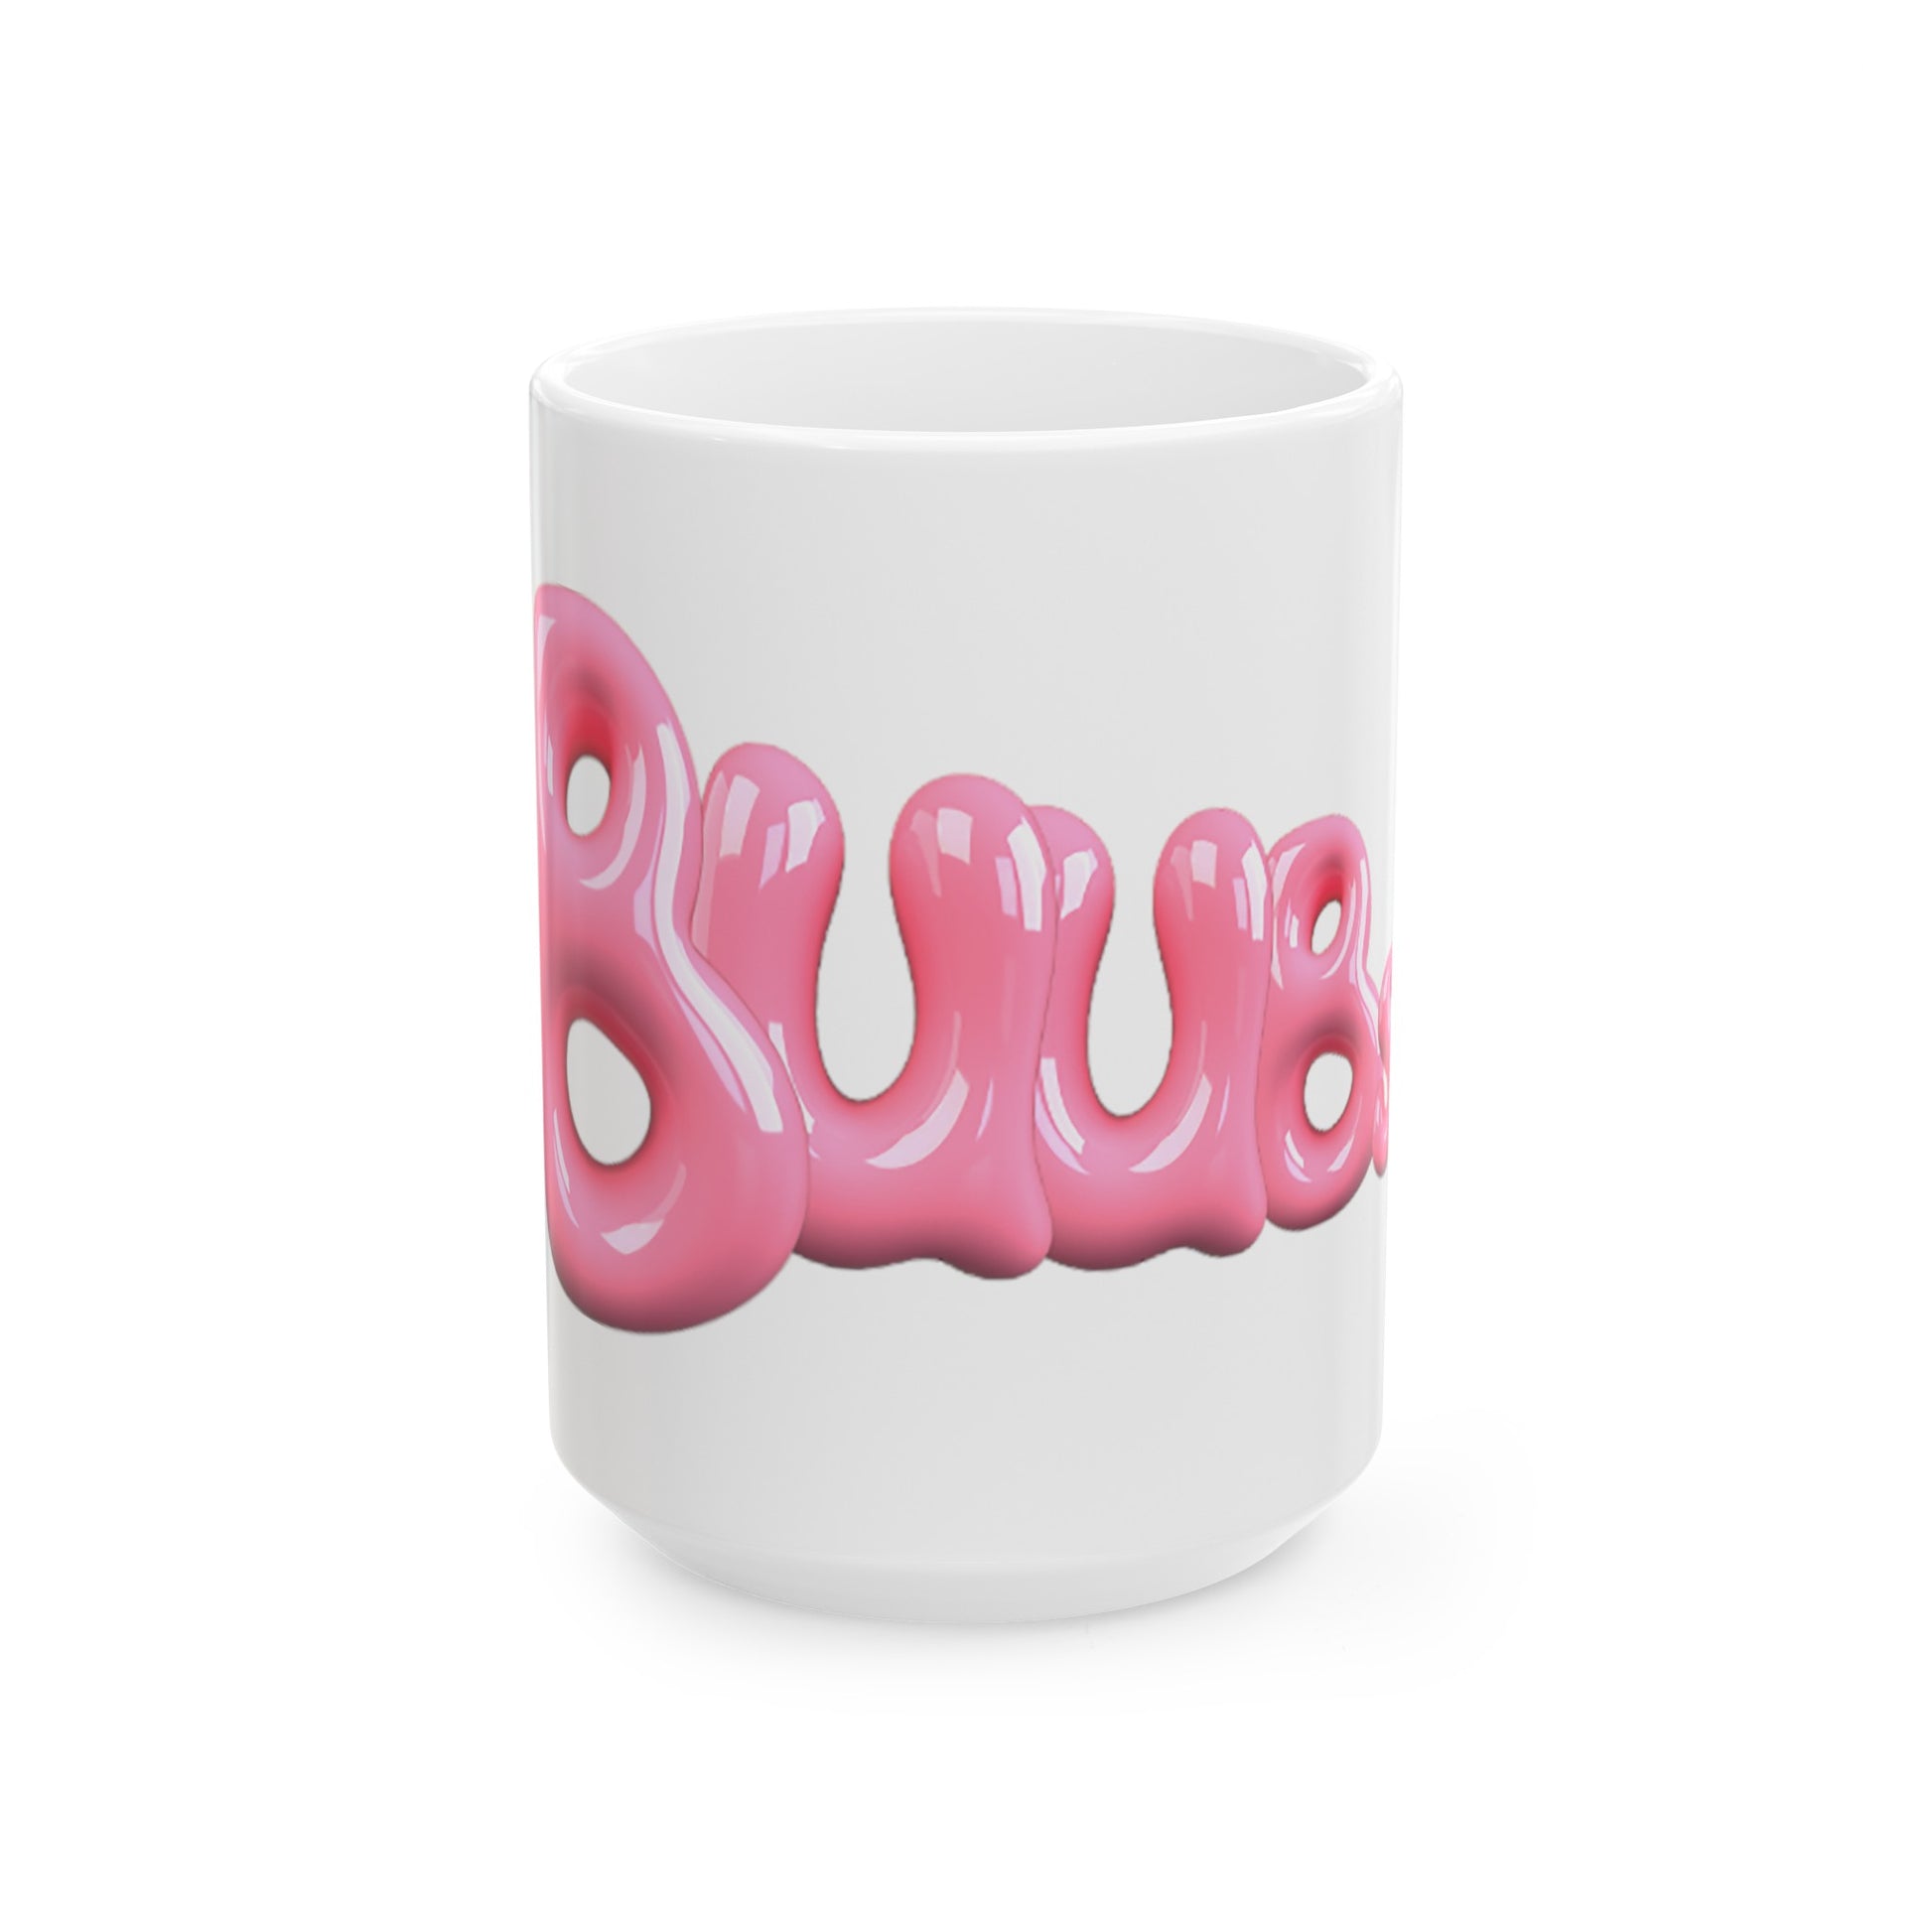 Juucie | "Buubs" Ceramic Mug, (11oz, 15oz) - Juucie